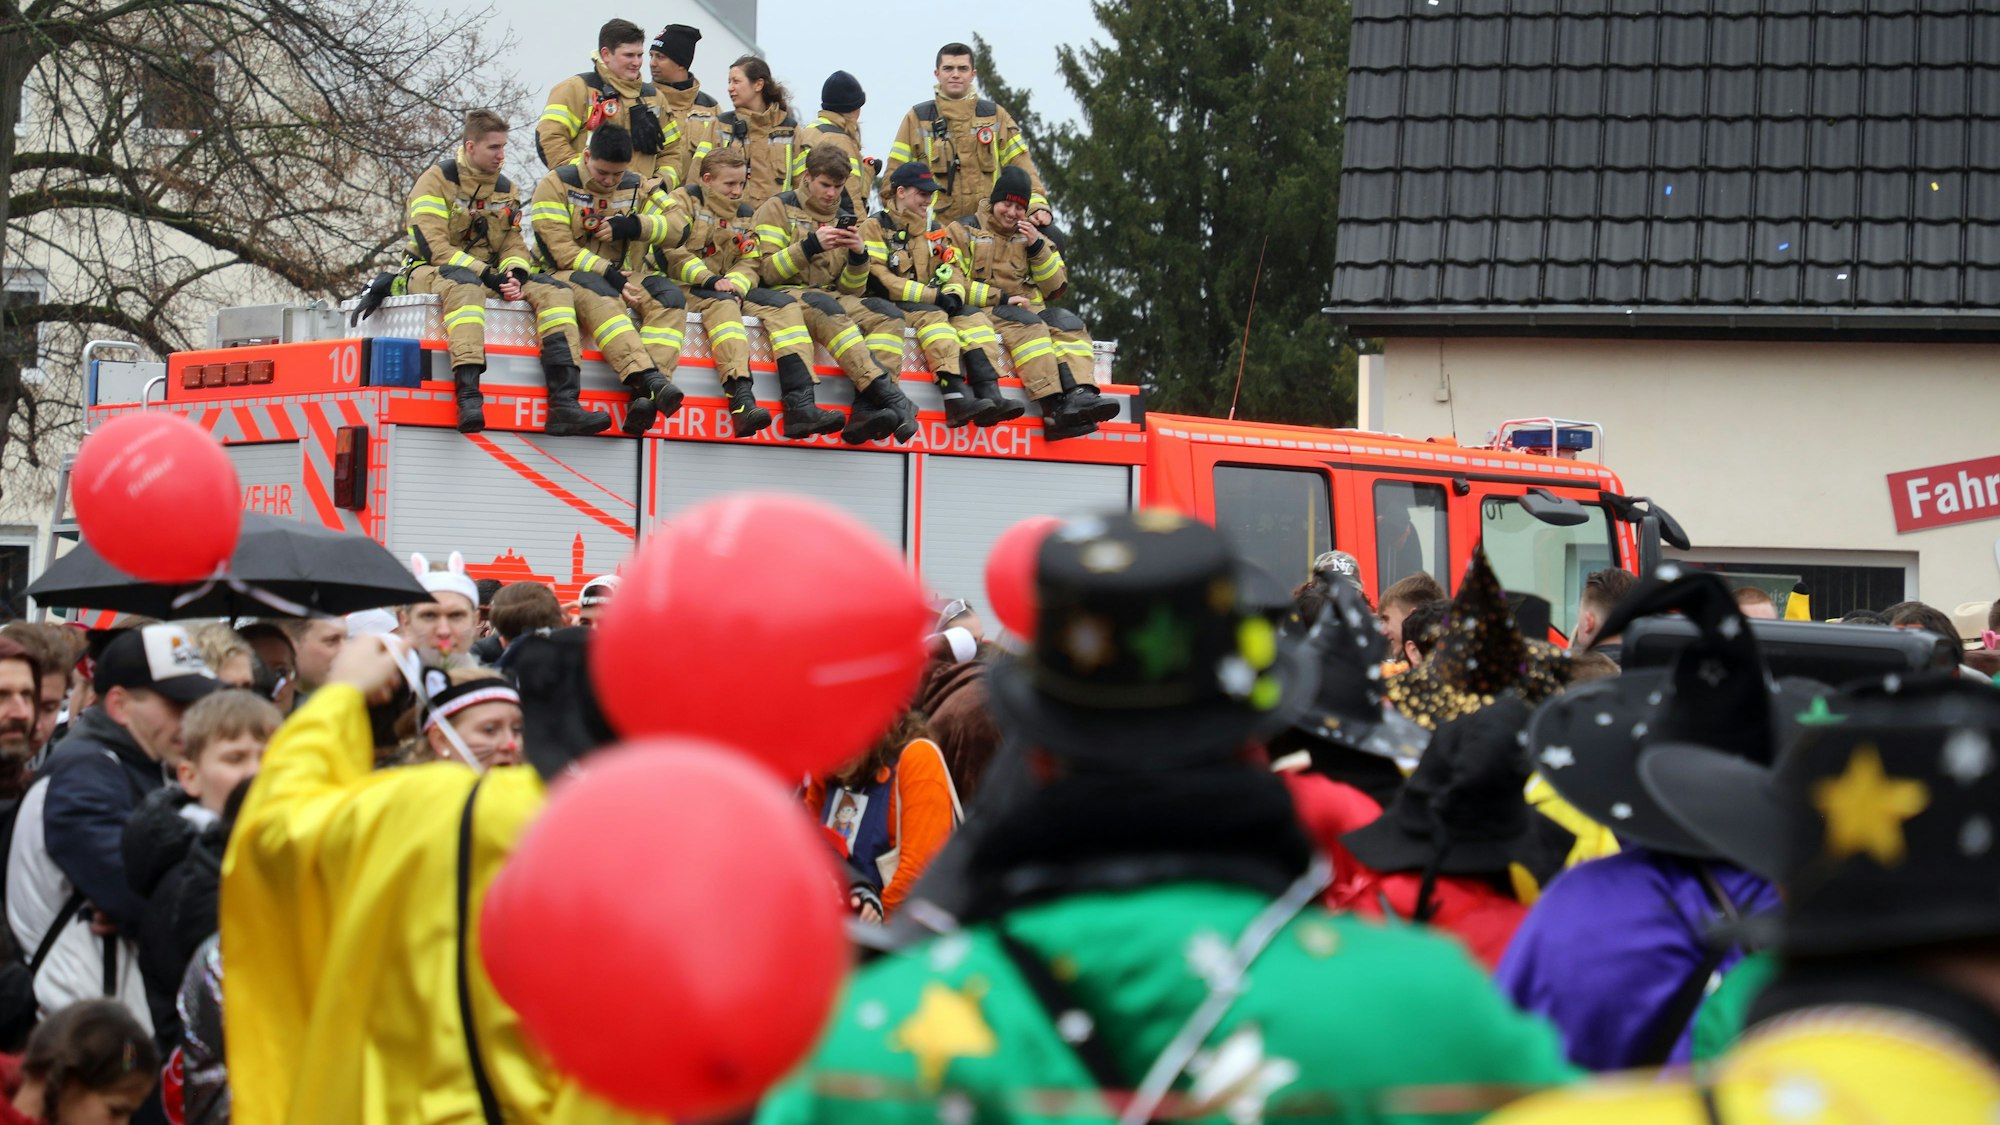 Feuerwehrleute sitzen auf dem Dach eines Feuerwehrfahrzeugs und beobachten das Karnevalsgeschehen auf der Straße.